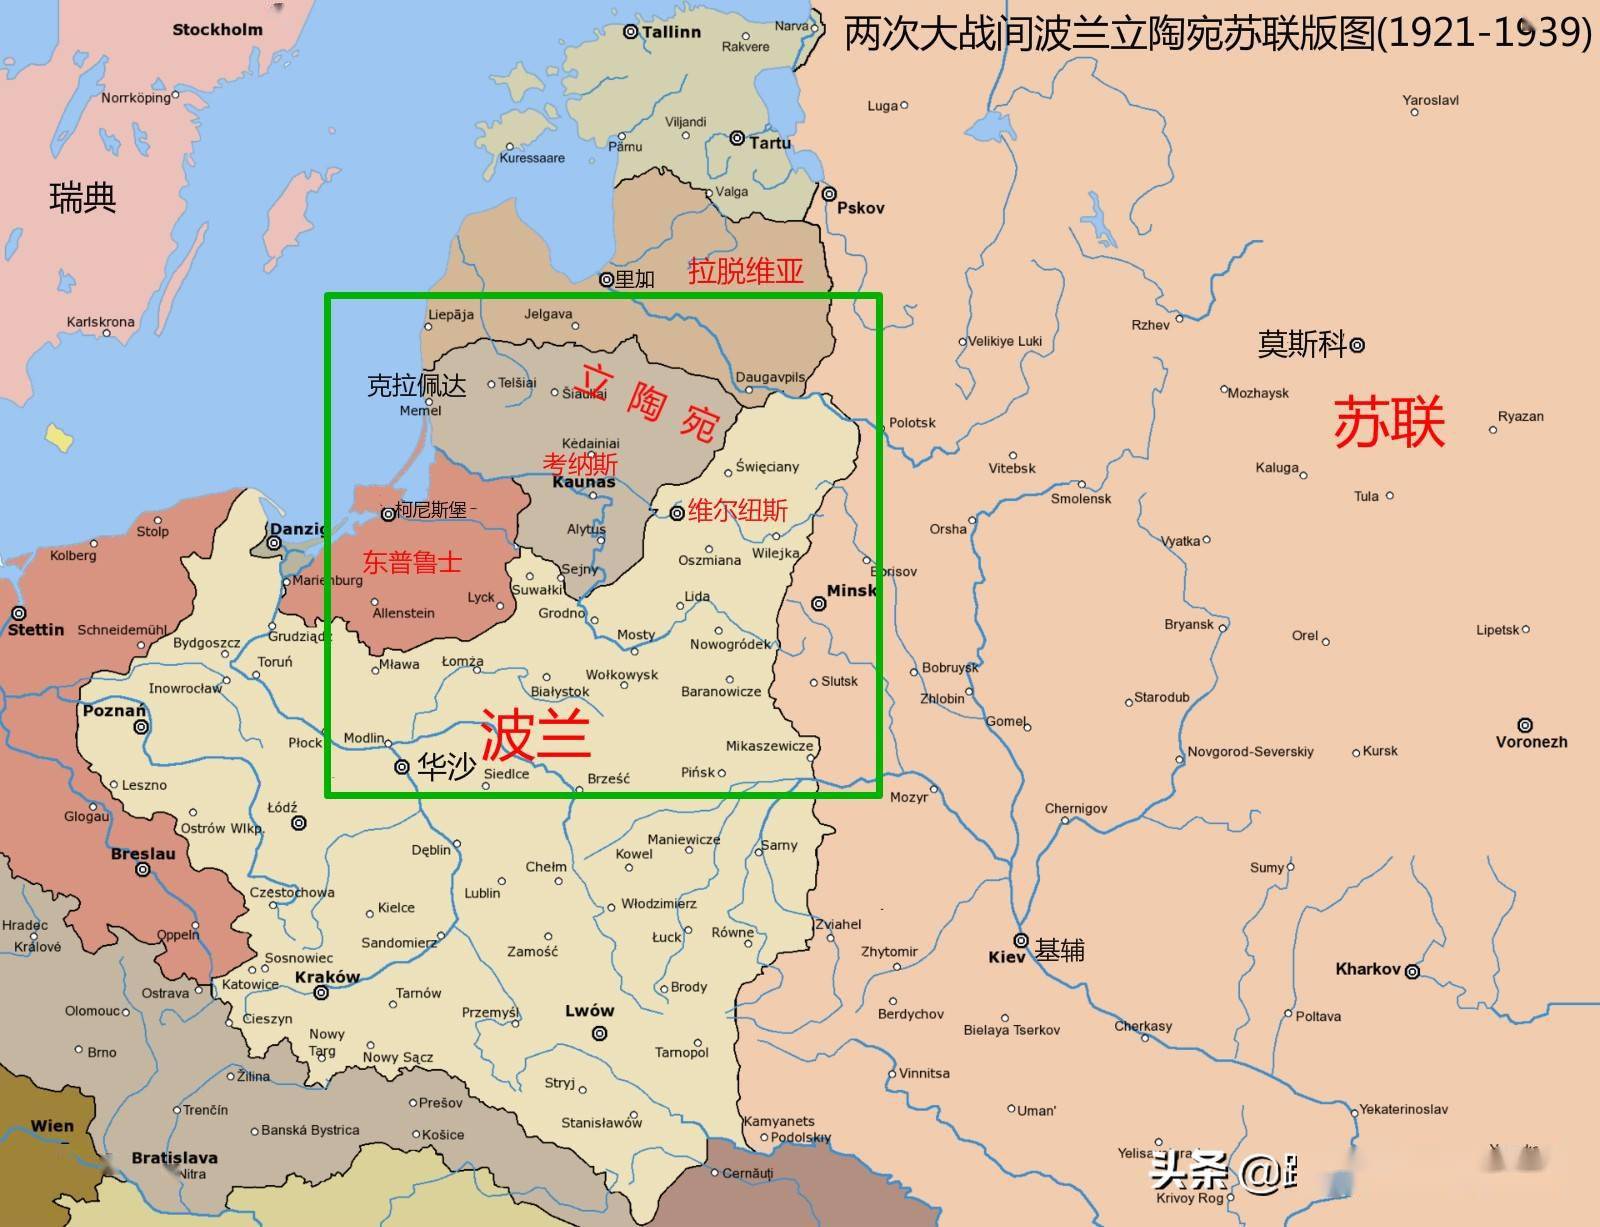 人口不足300万的立陶宛为何敢挑战俄罗斯中国这样的大国